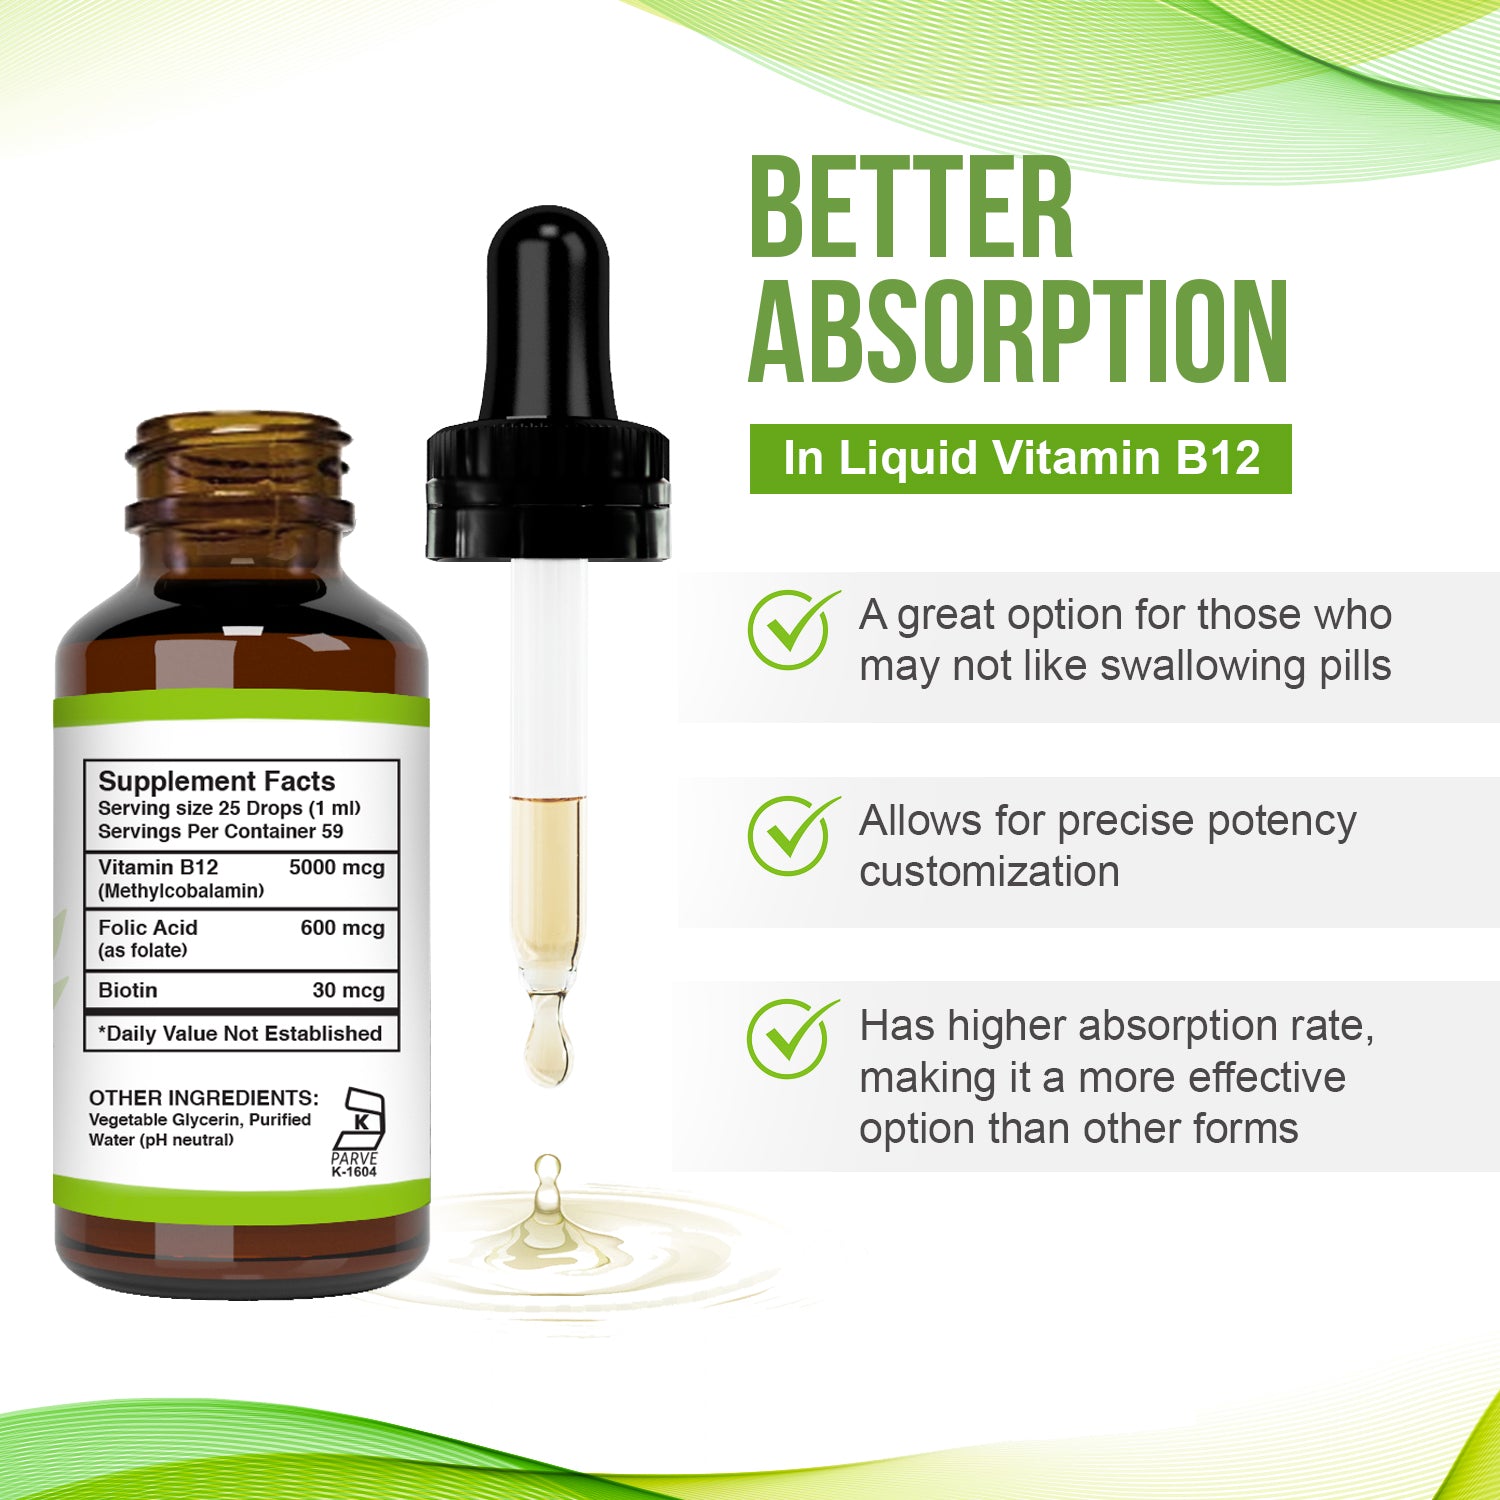 Better absorption in Liquid Vitamin B12